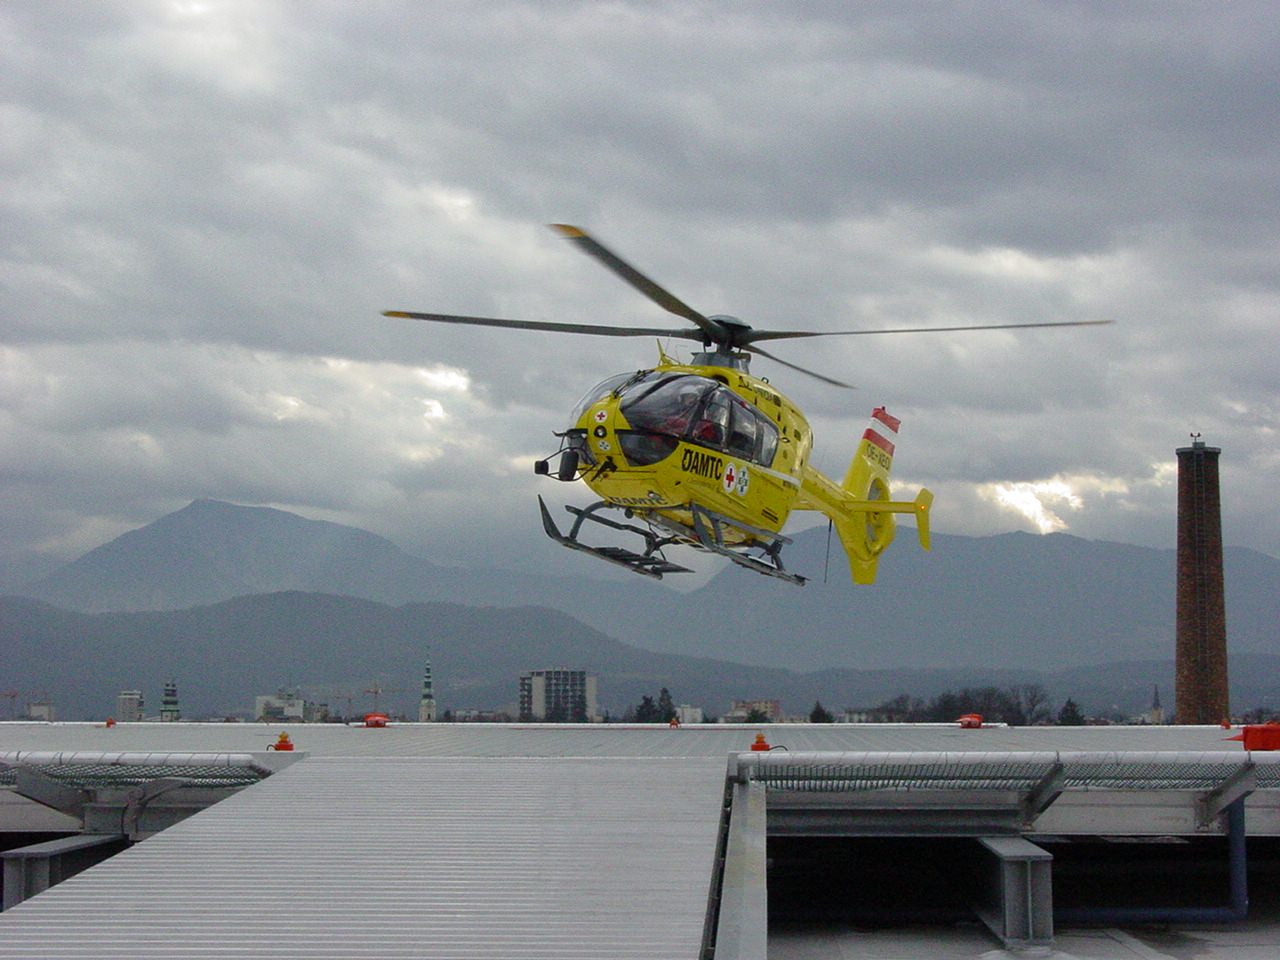 Der Bub musste nach der medizinischen Erstversorgung mit dem Rettungshubschrauber C11 in das LKH Graz geflogen werden.